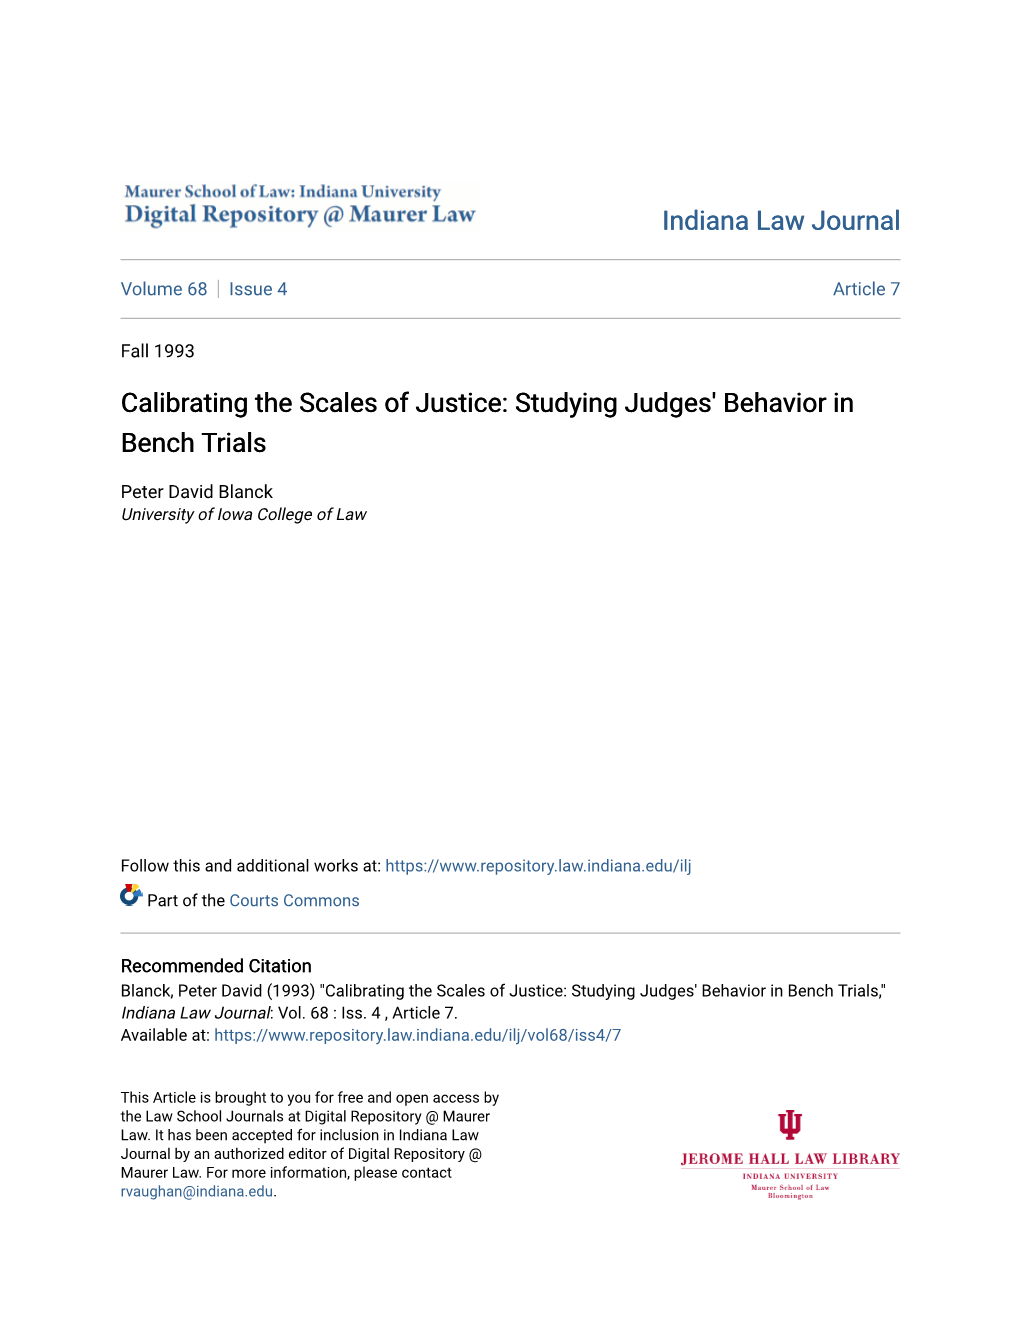 Studying Judges' Behavior in Bench Trials